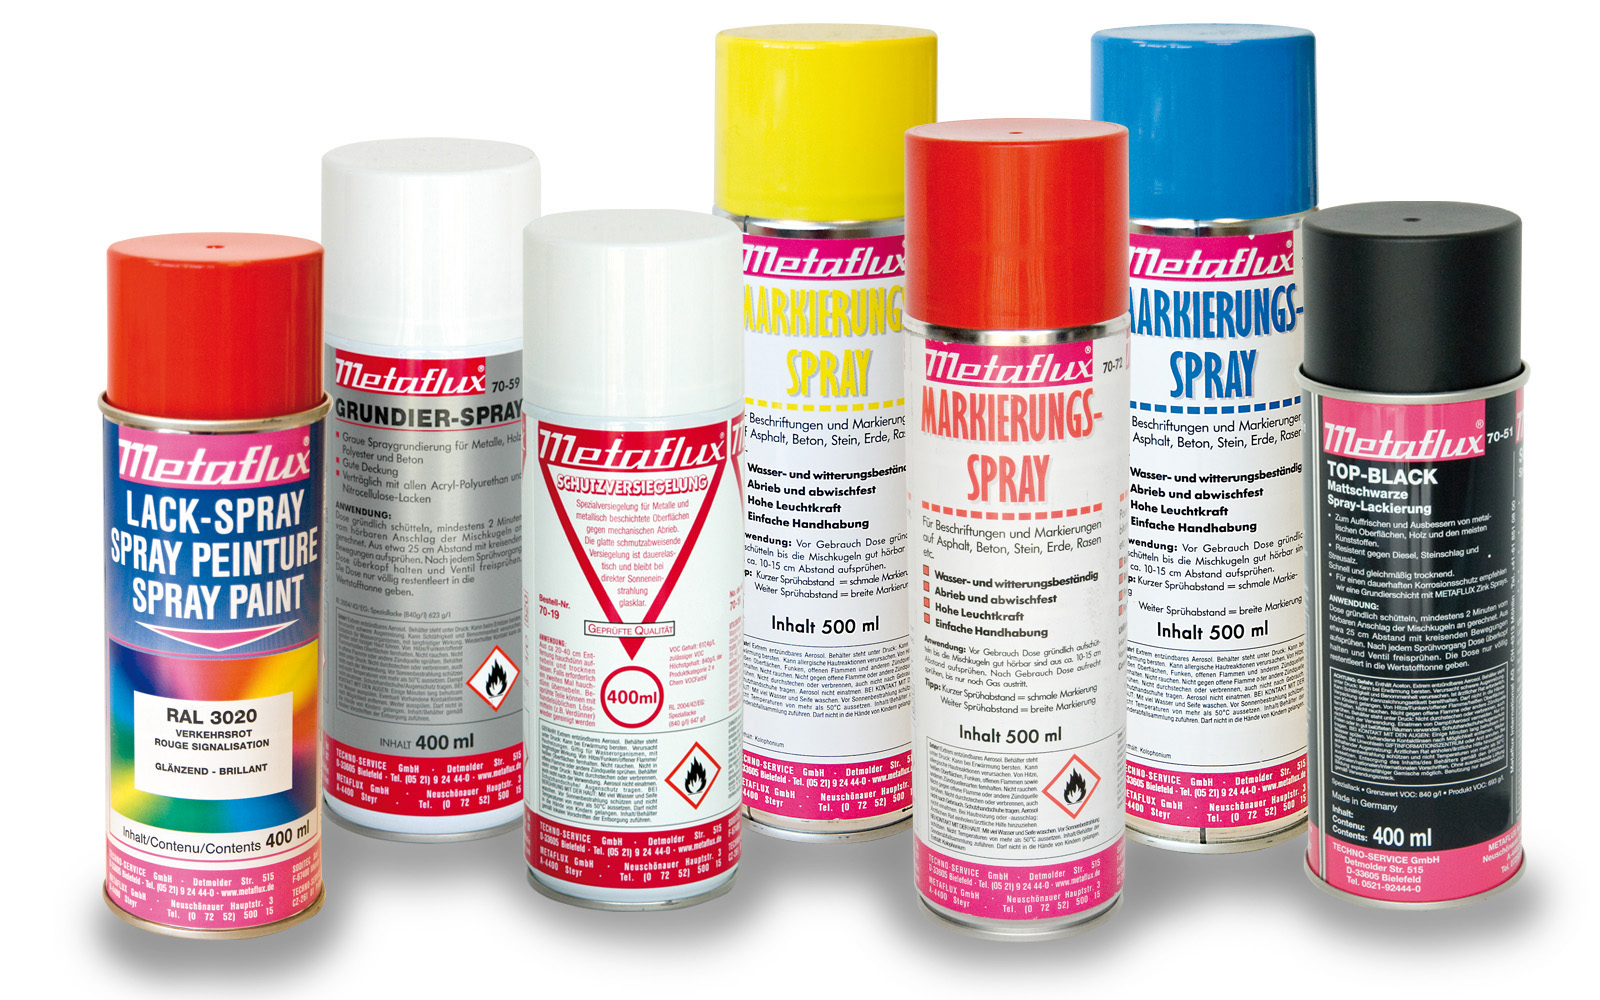 Farb-, Lack-, Markierungs- und Grundier-Sprays